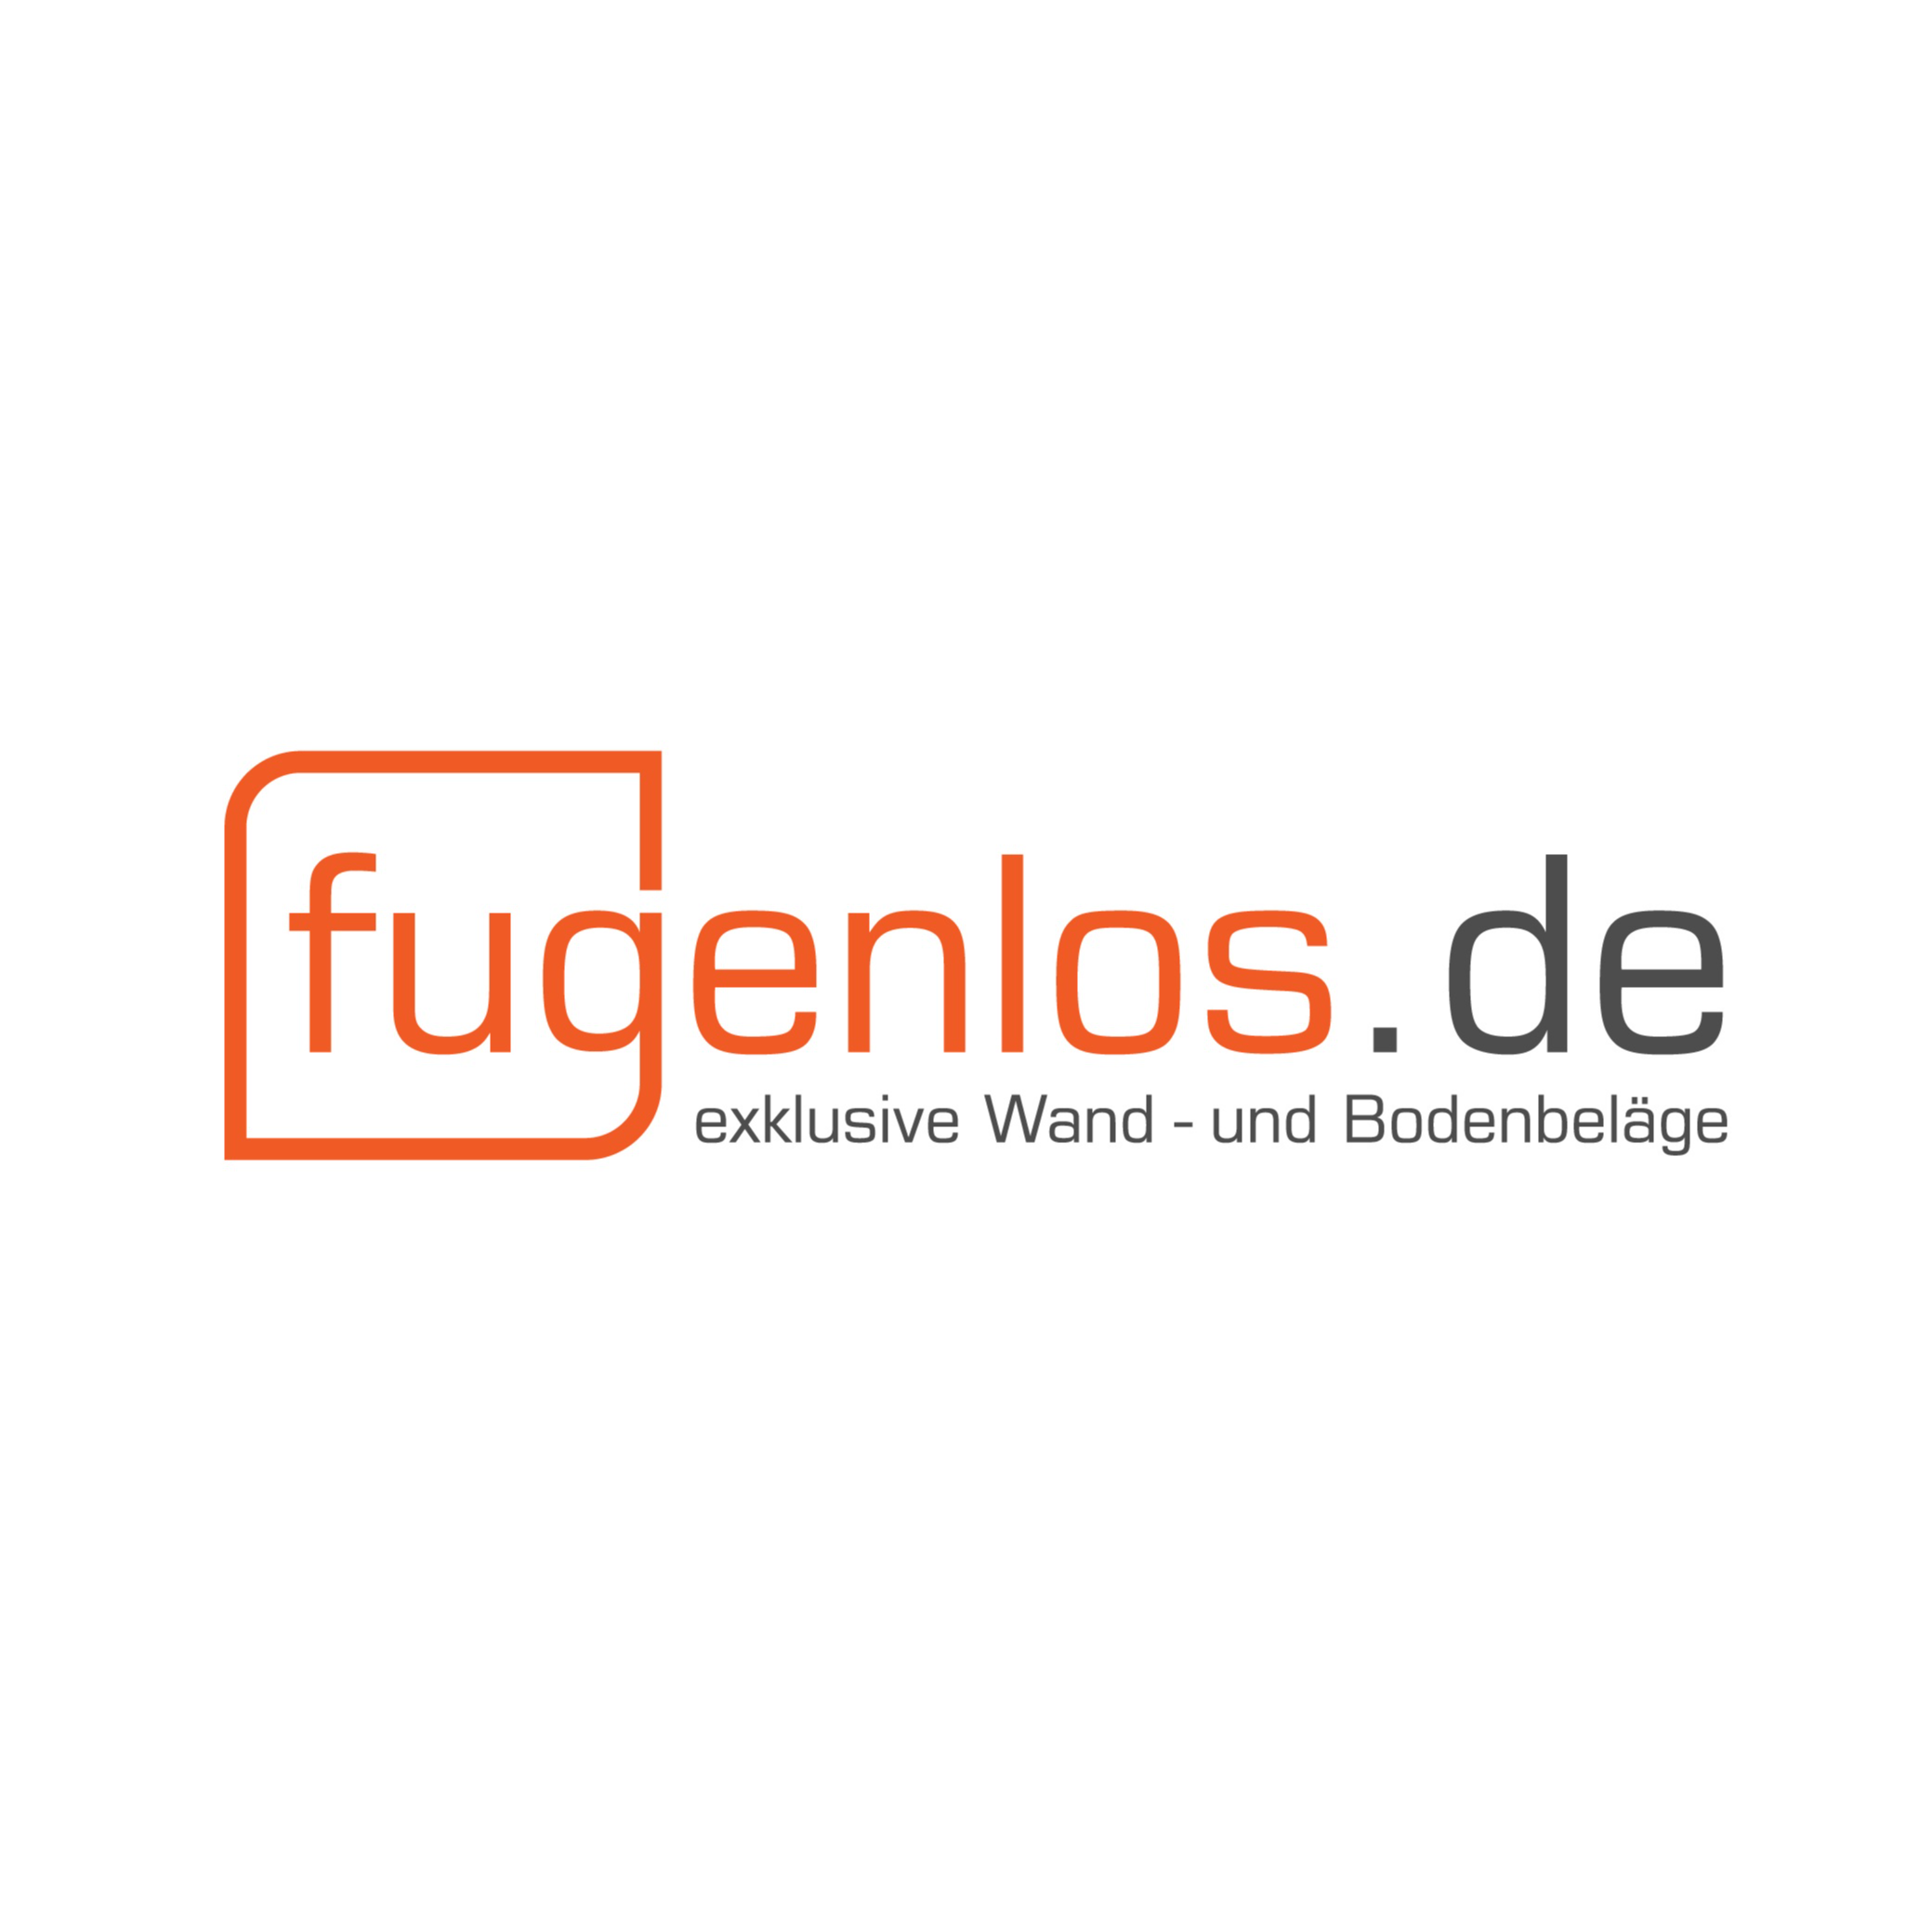 Logo fugenlos.de - exklusive Wand- und Bodenbeläge - Inhaber Tim Marneth